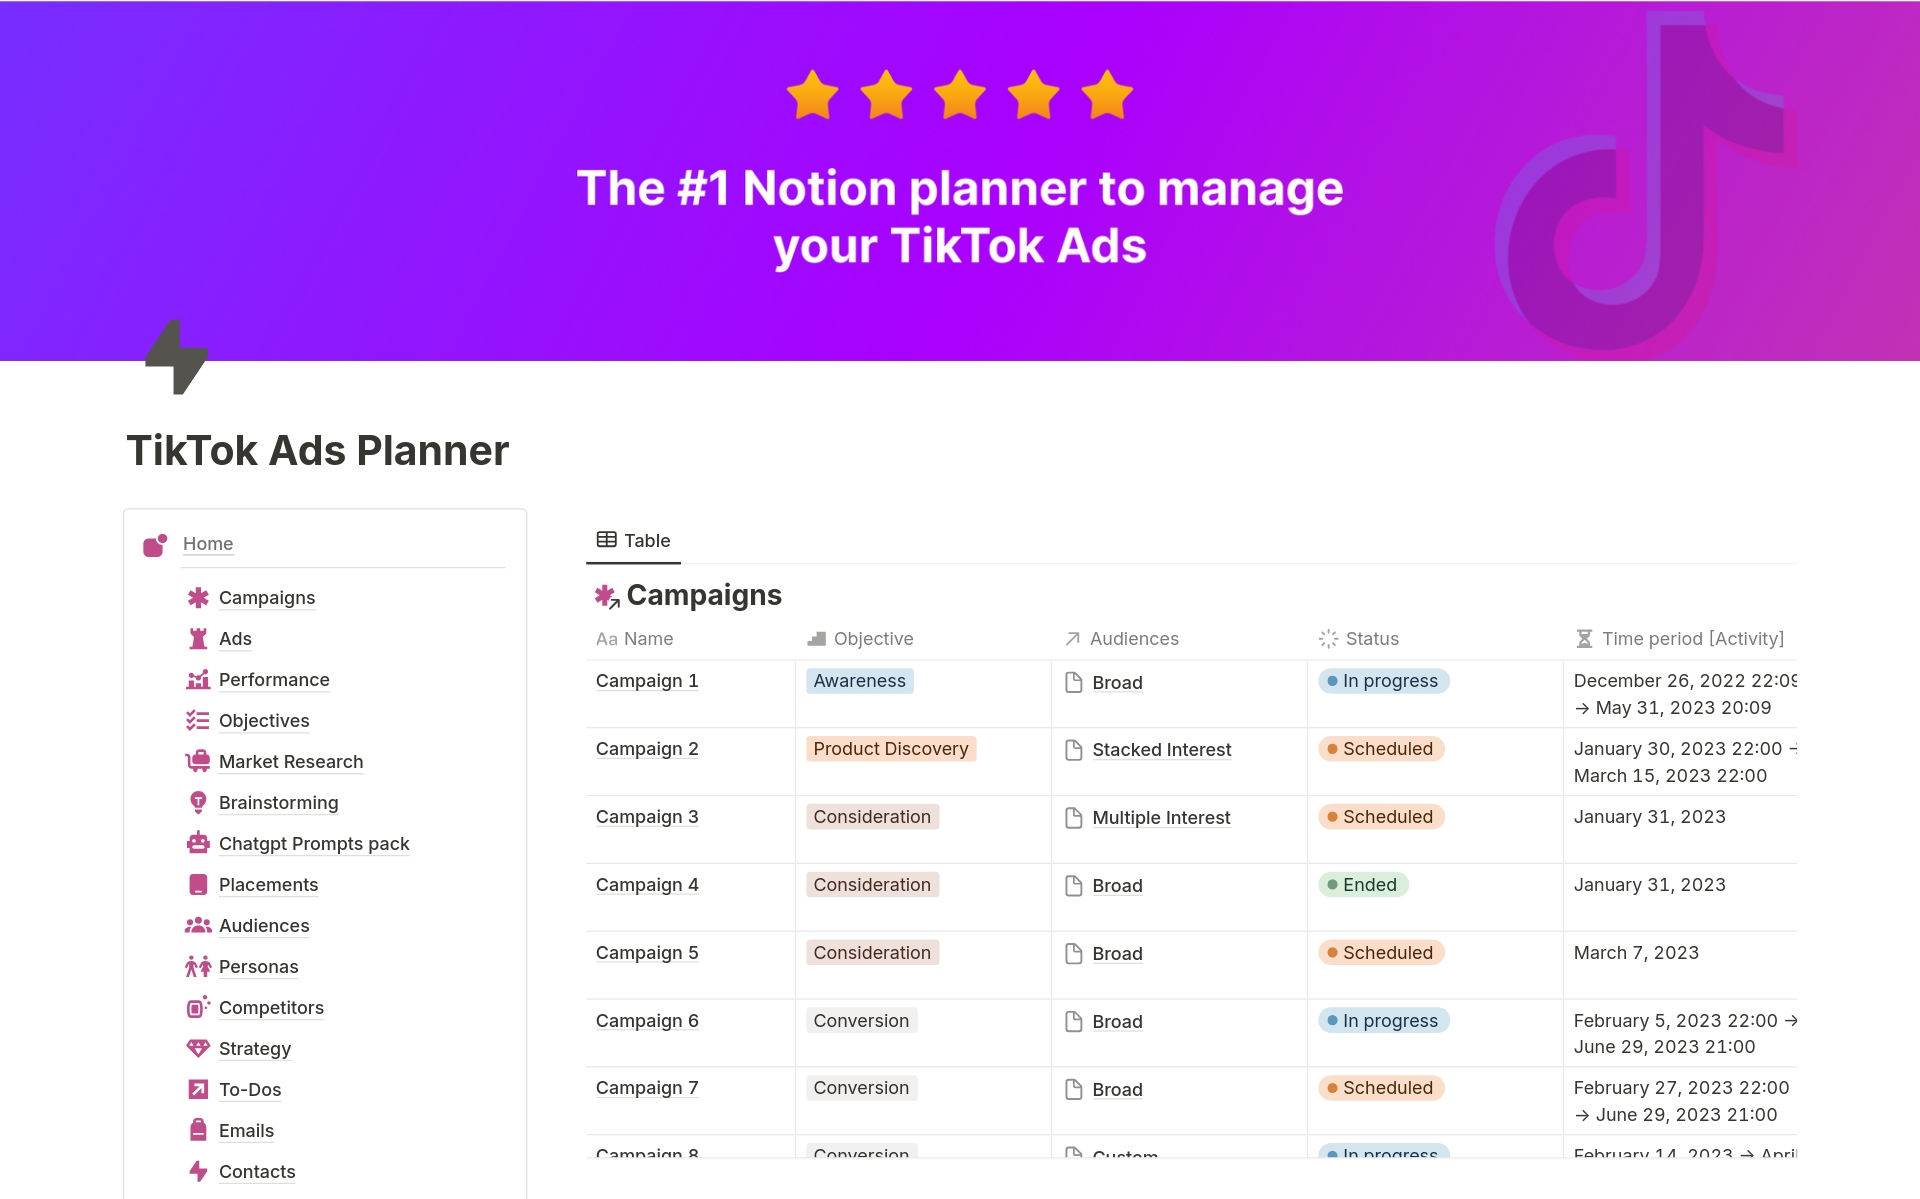 Uma prévia do modelo para TikTok Ads Planner